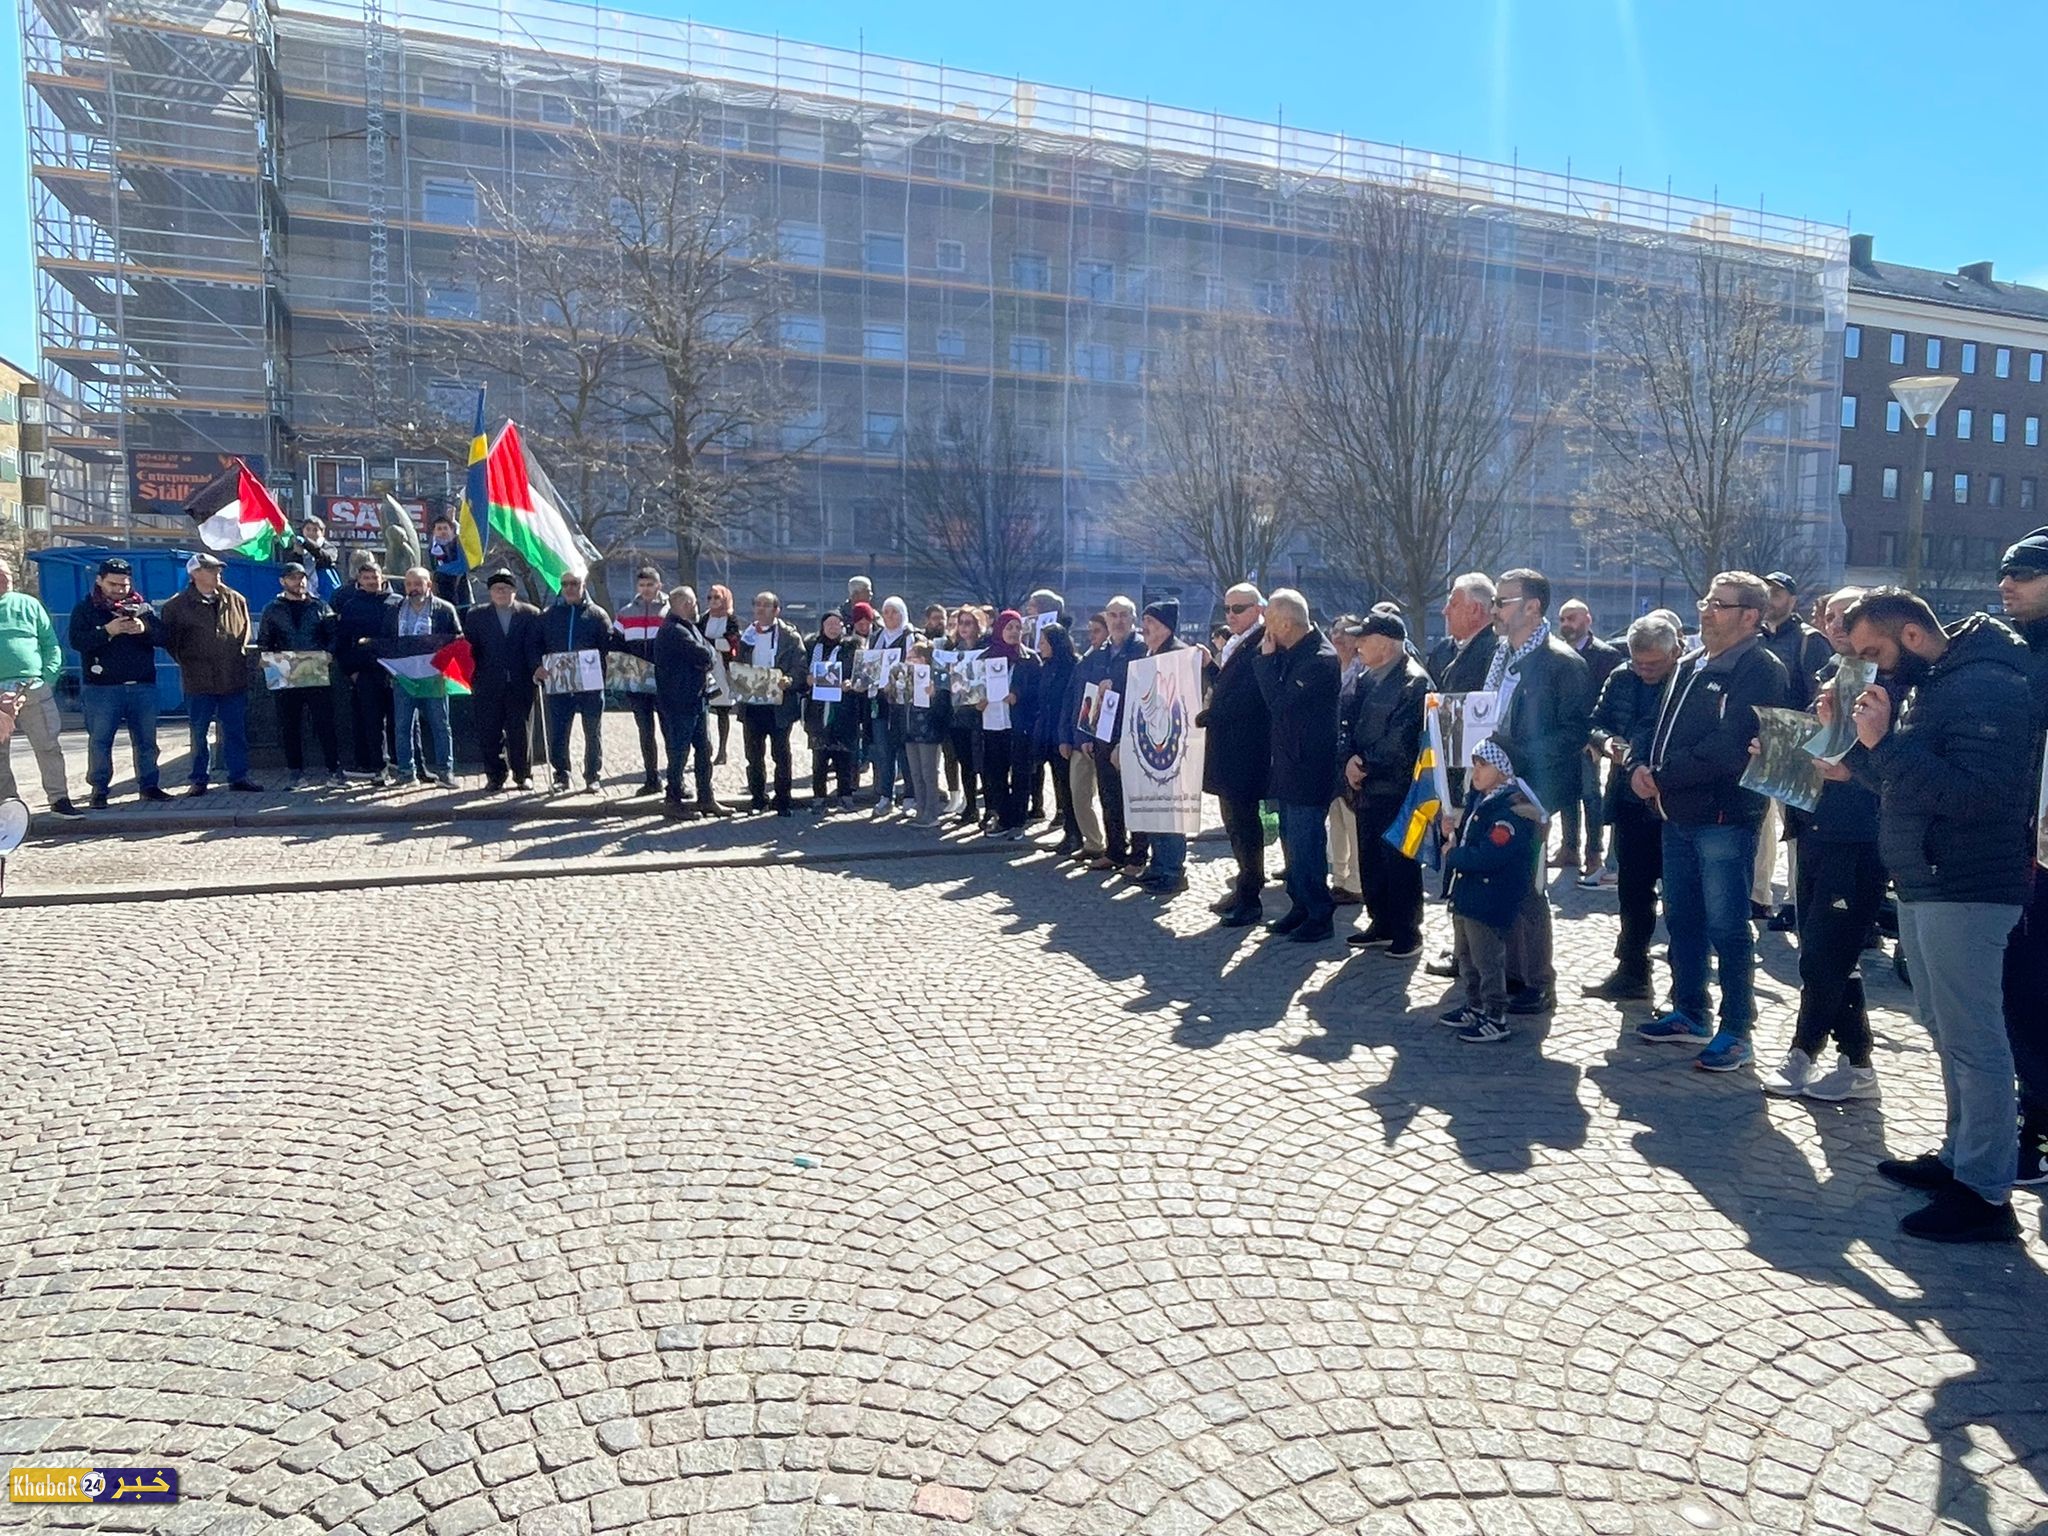 السويد: وقفة مع الشعب الفلسطيني تنديداً بجرائم الاحتلال